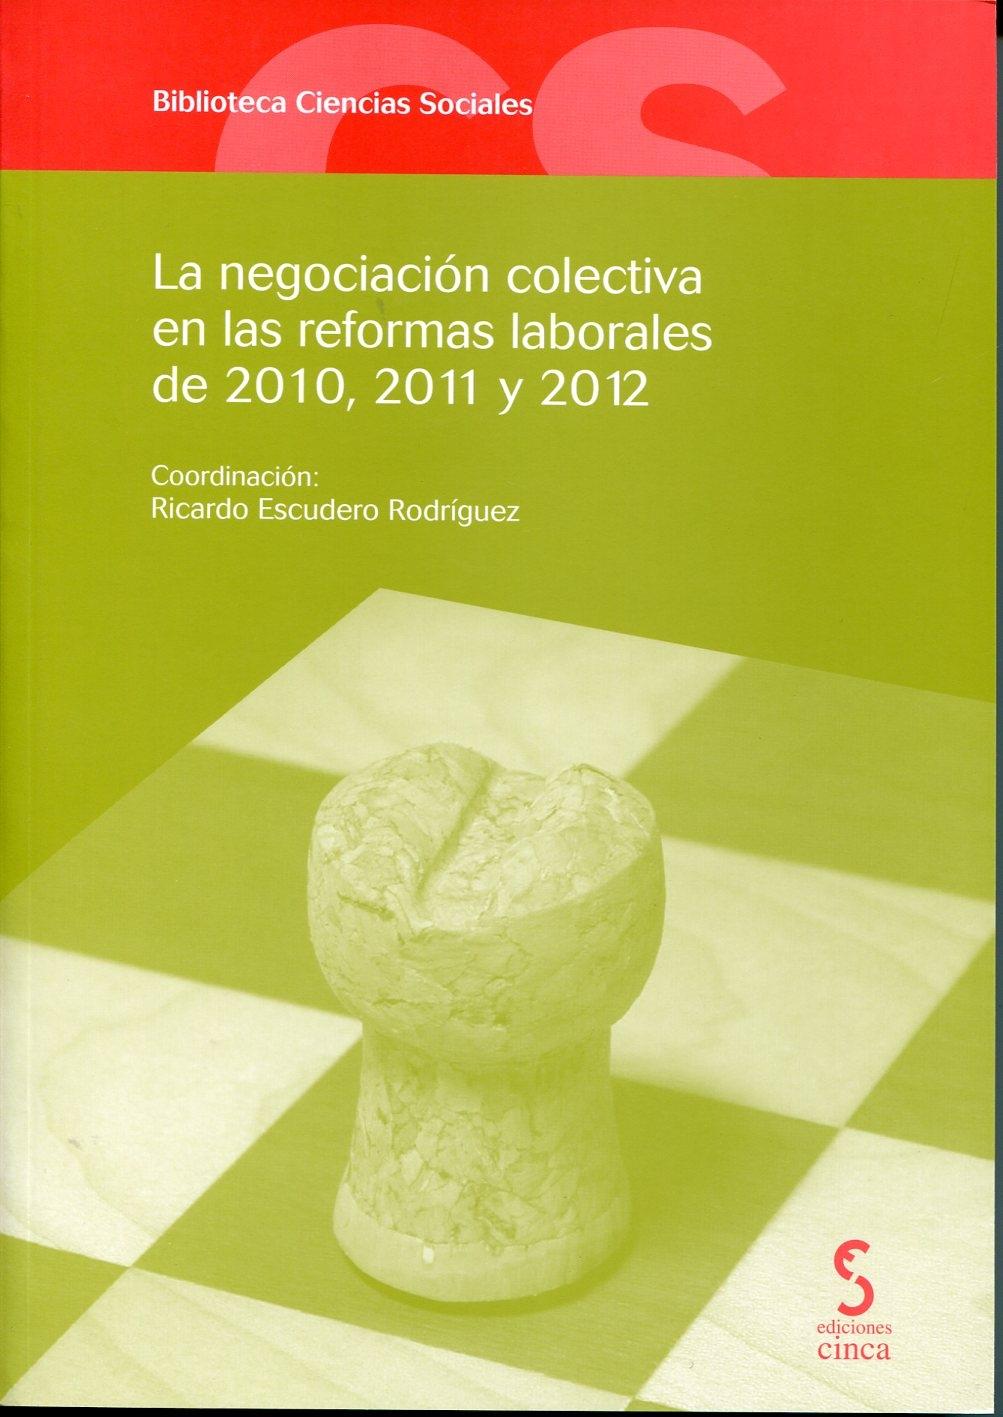 La negociacion colectiva en las reformas laborales de 2010, 2011 y 2012